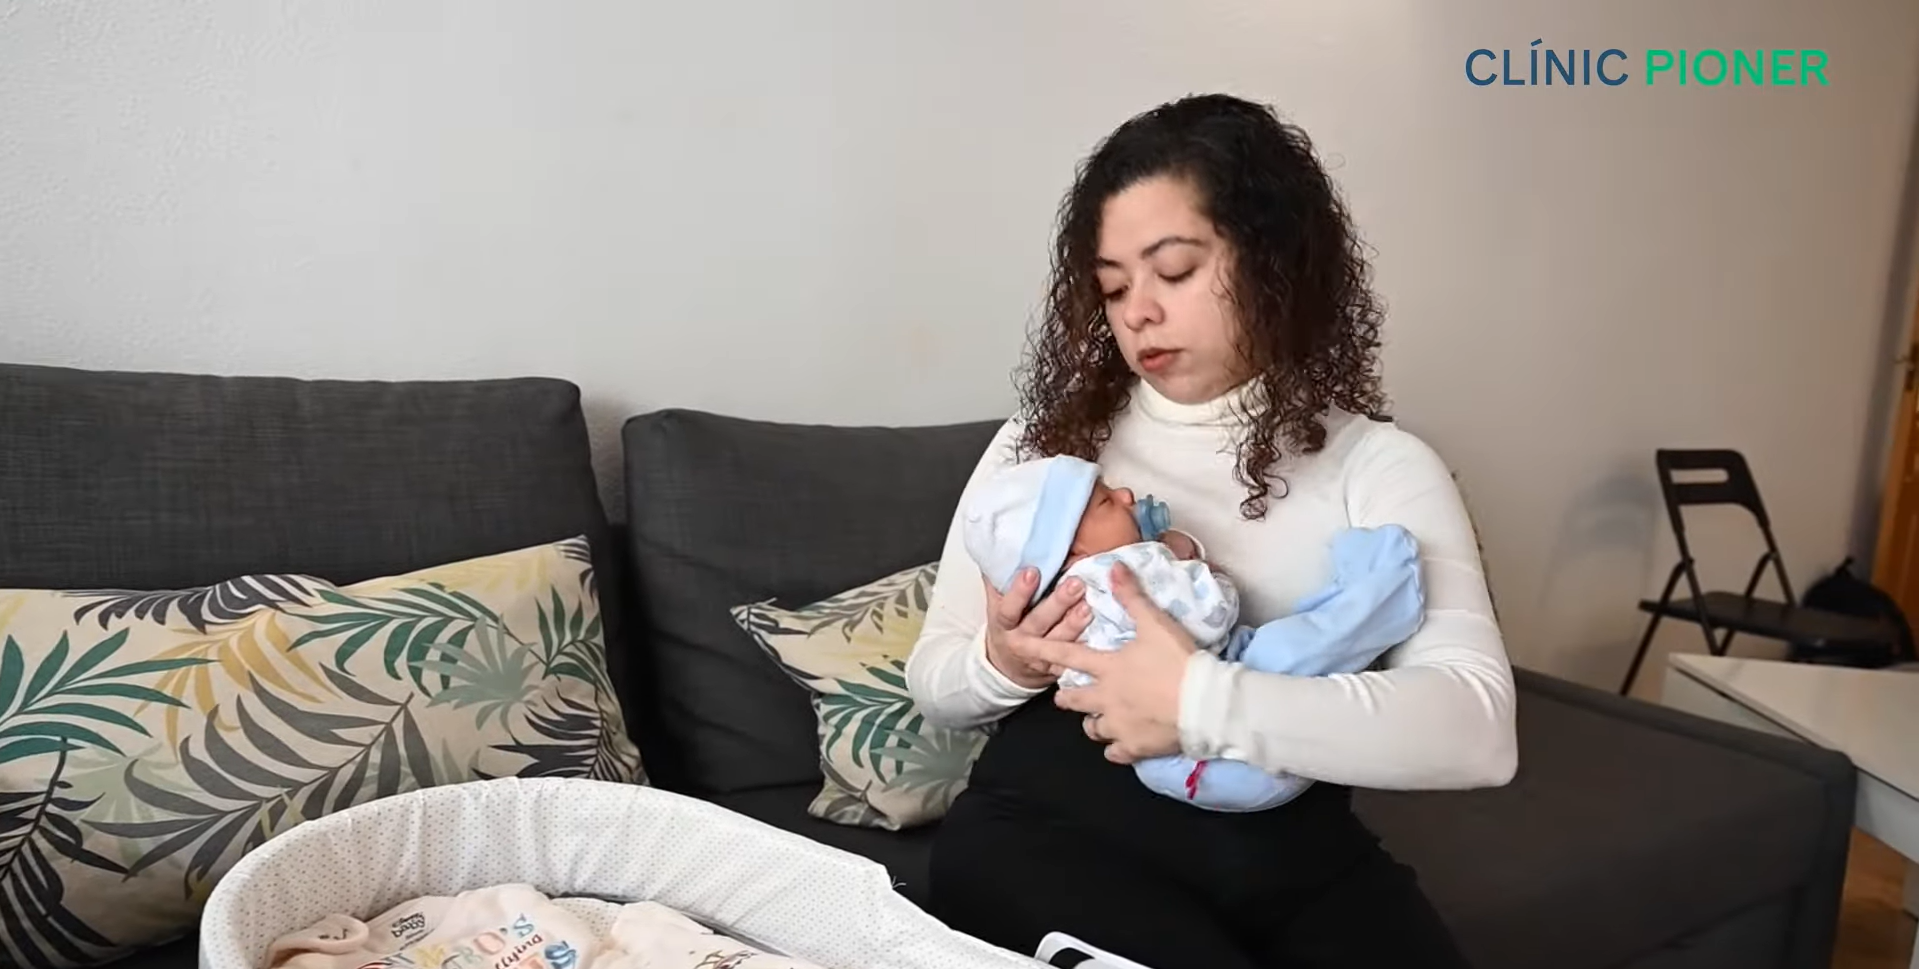 Іспанка з рідкісним захворюванням народила дитину завдяки пересадці матки, у якій сама й народилася